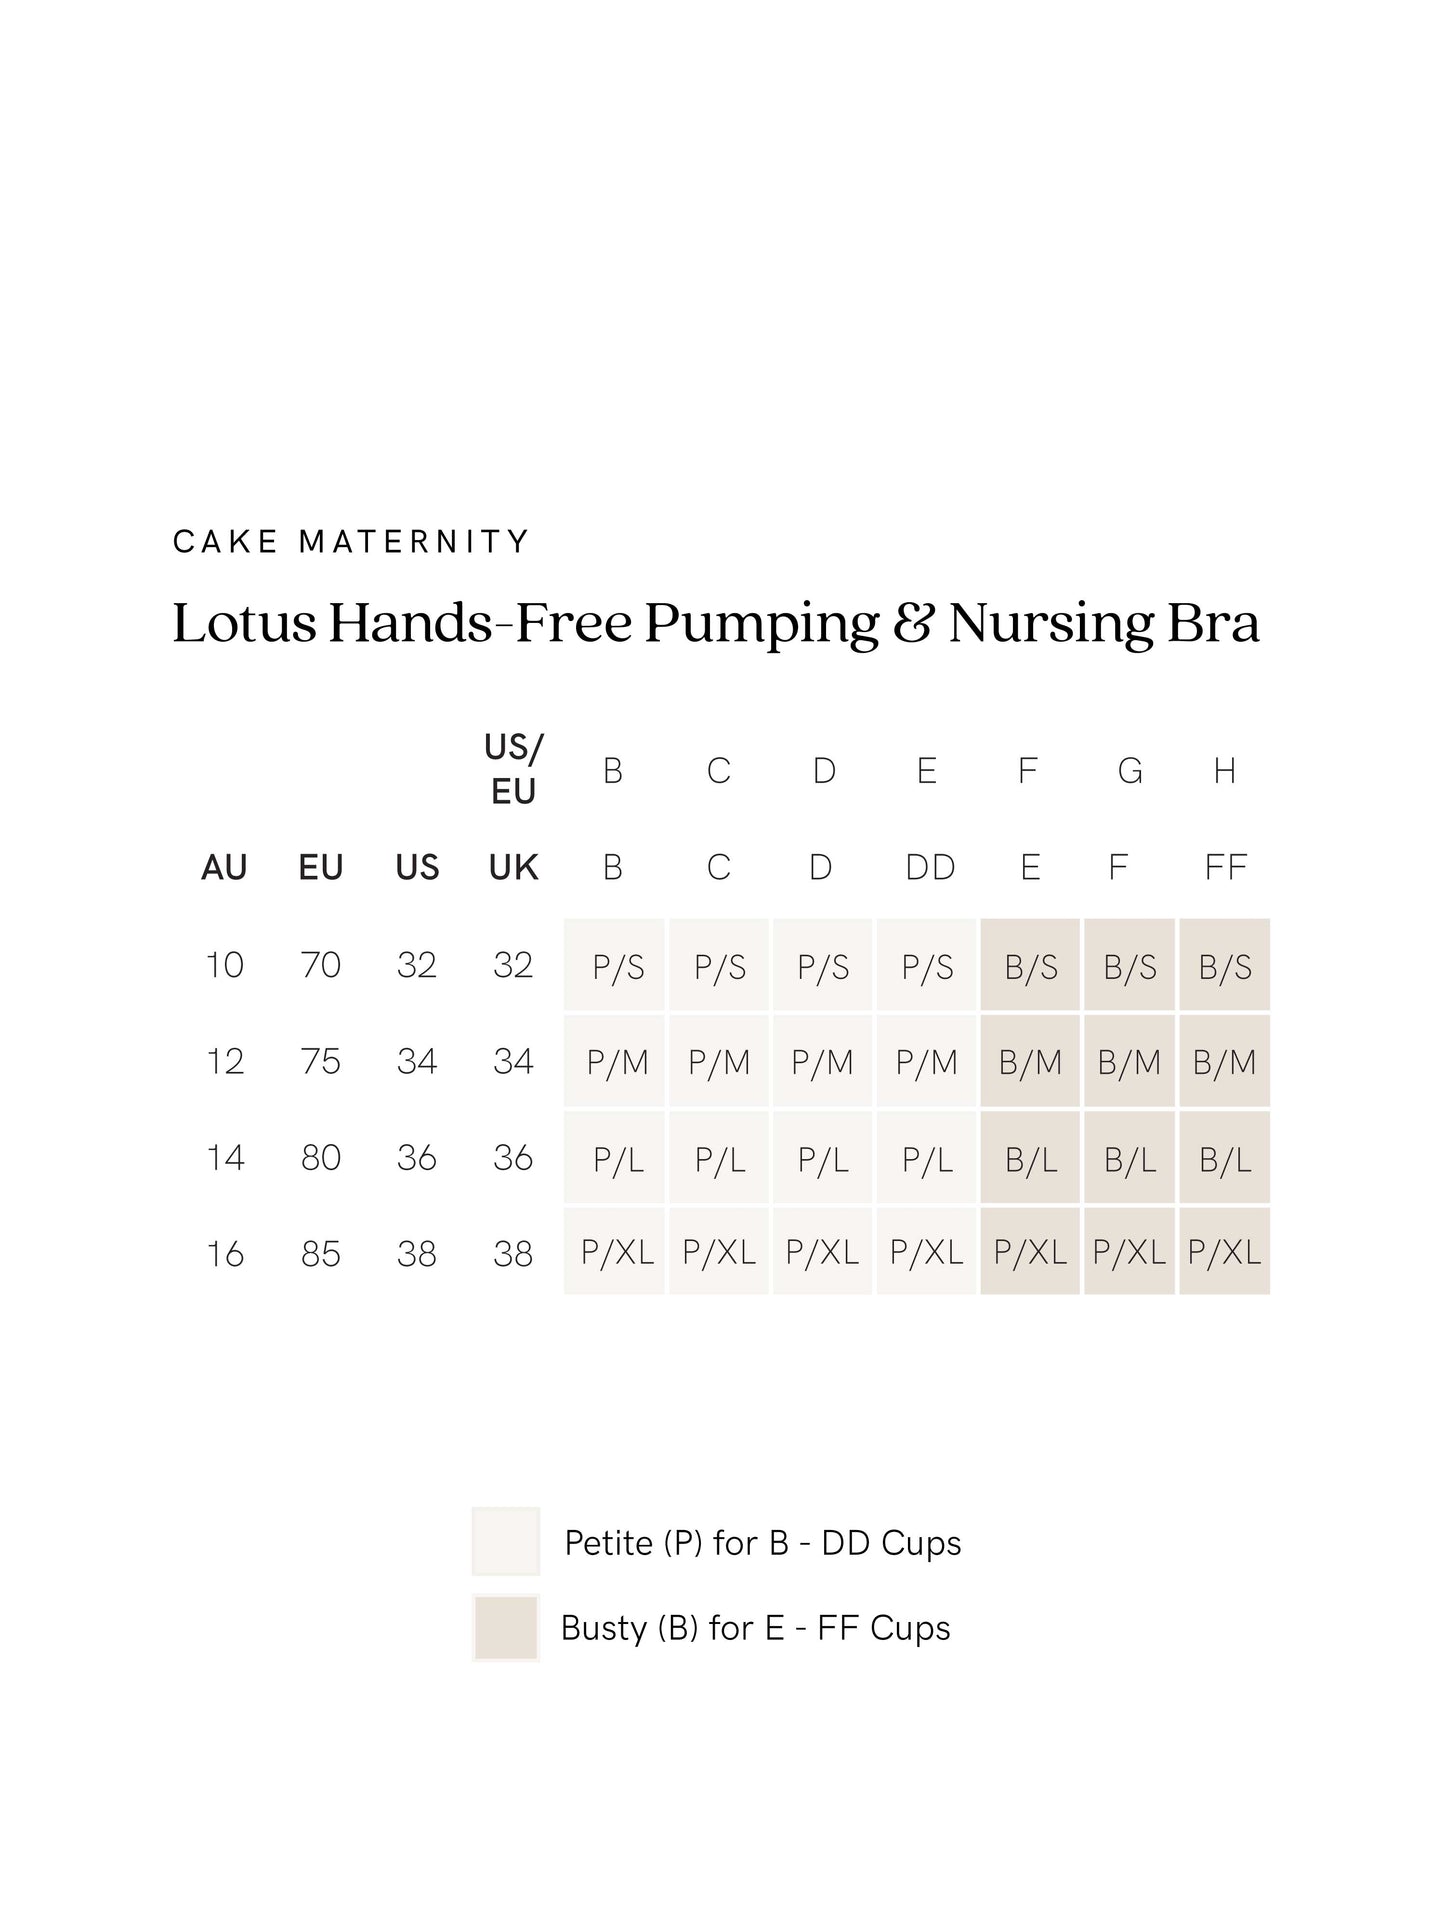 Lotus Hands-Free Pumping & Nursing Bra